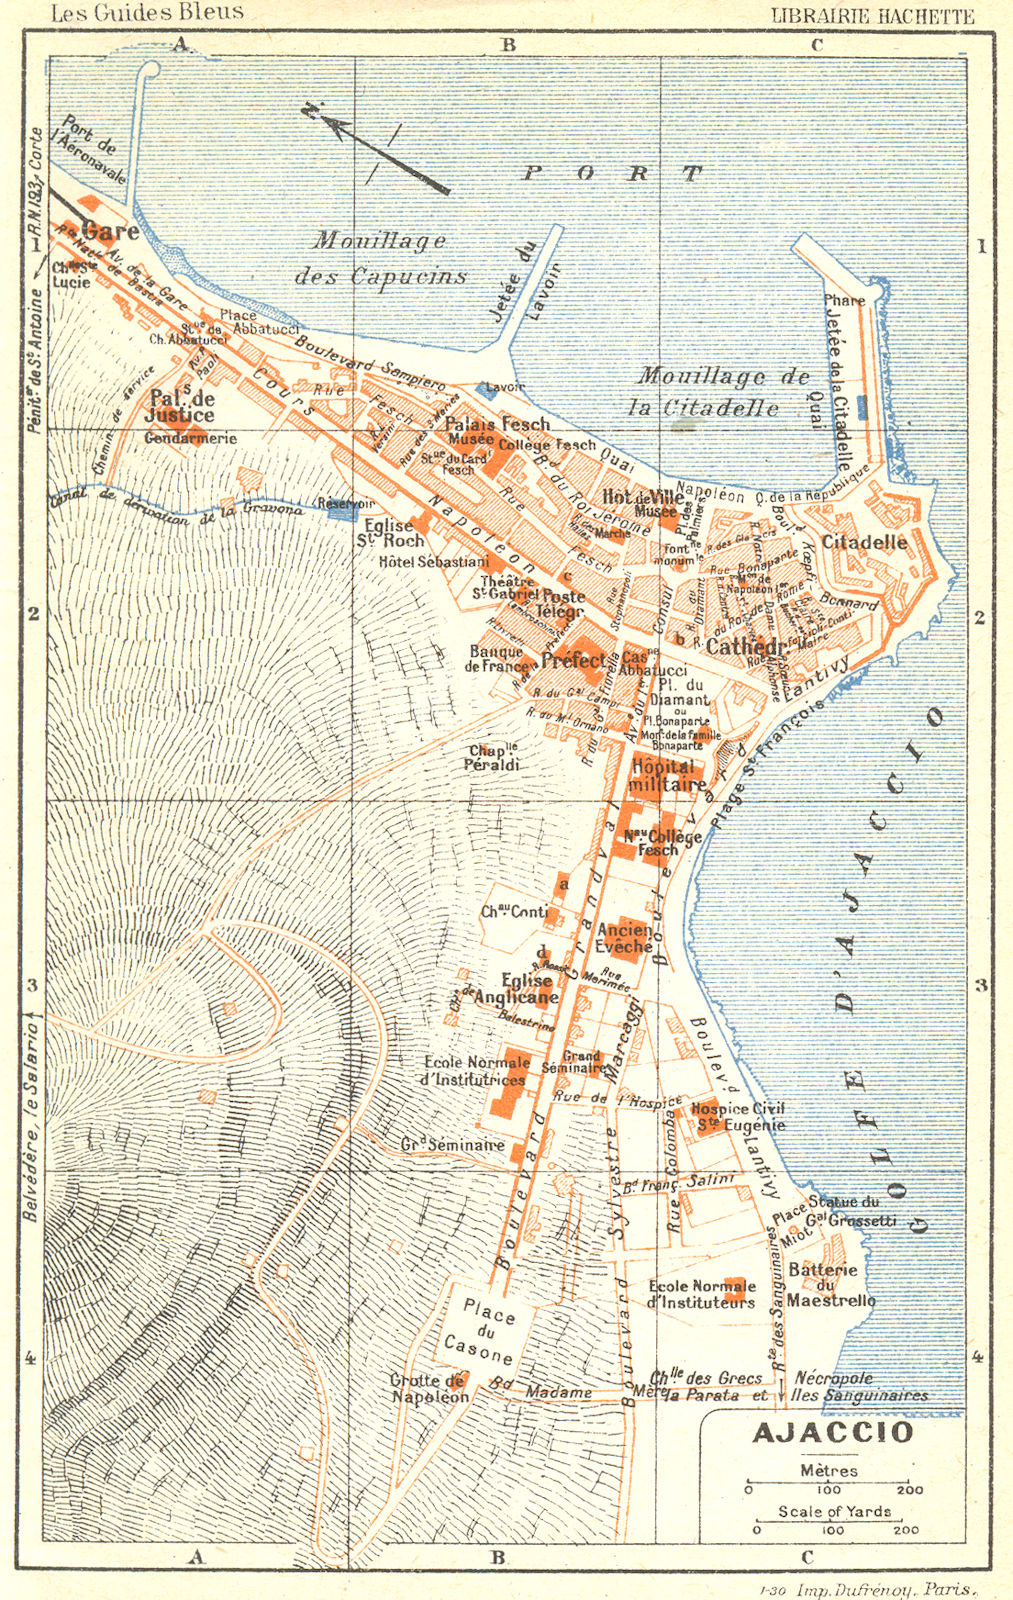 CORSE-DU-SUD. Ajaccio Corsica 1926 old vintage map plan chart